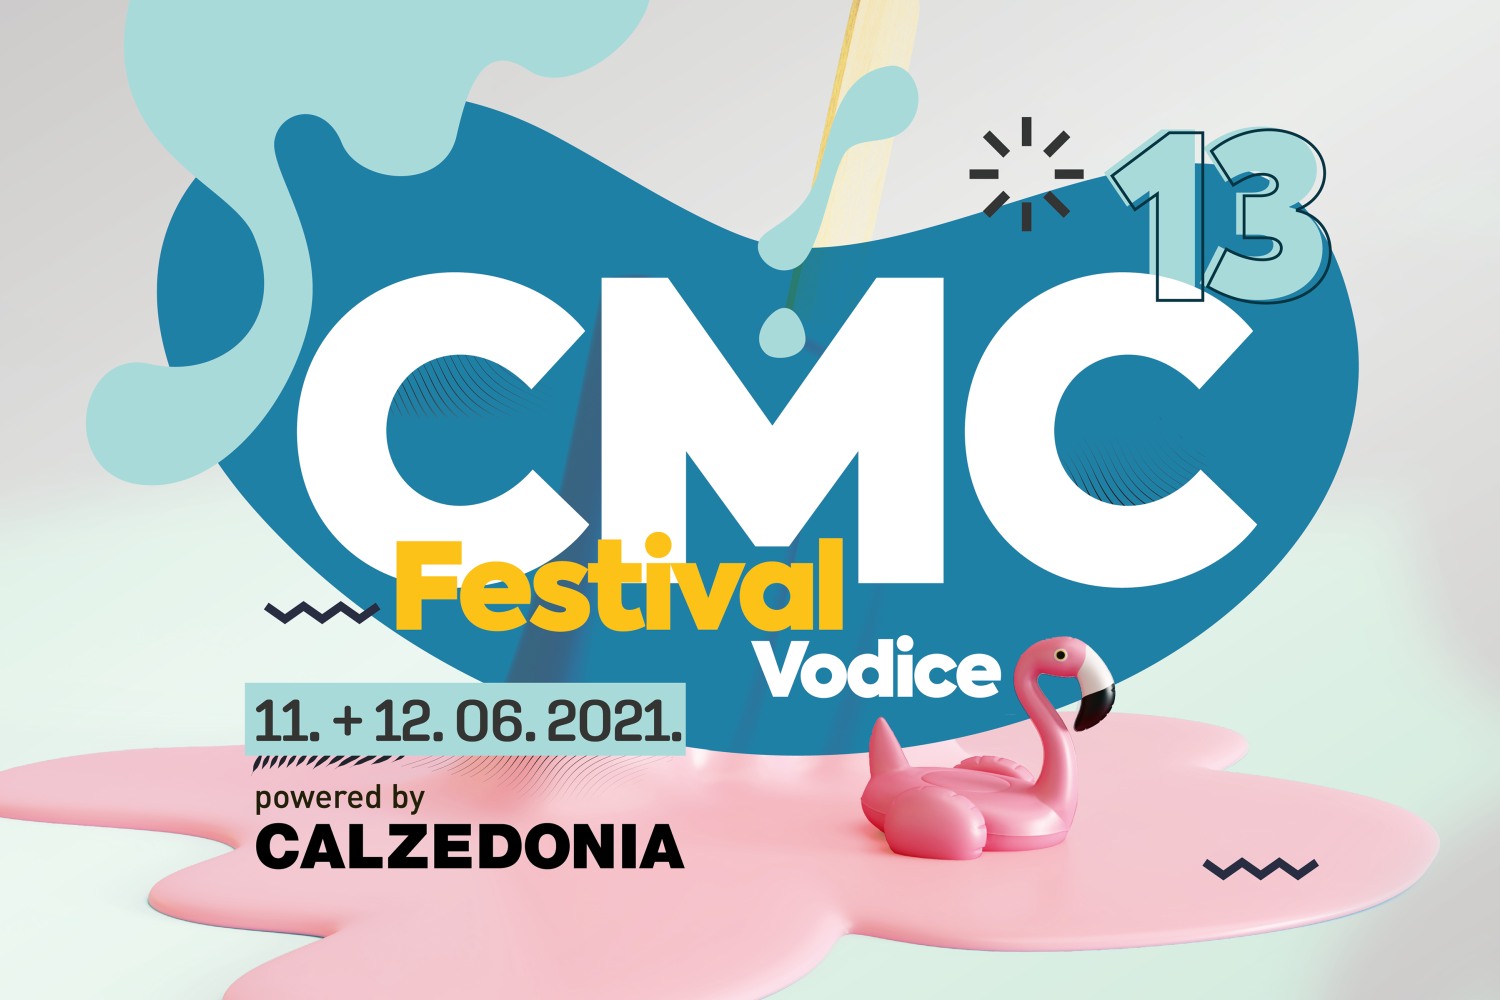 Poznati izvođači 13. CMC festivala Vodice 2021. powered by Calzedonia